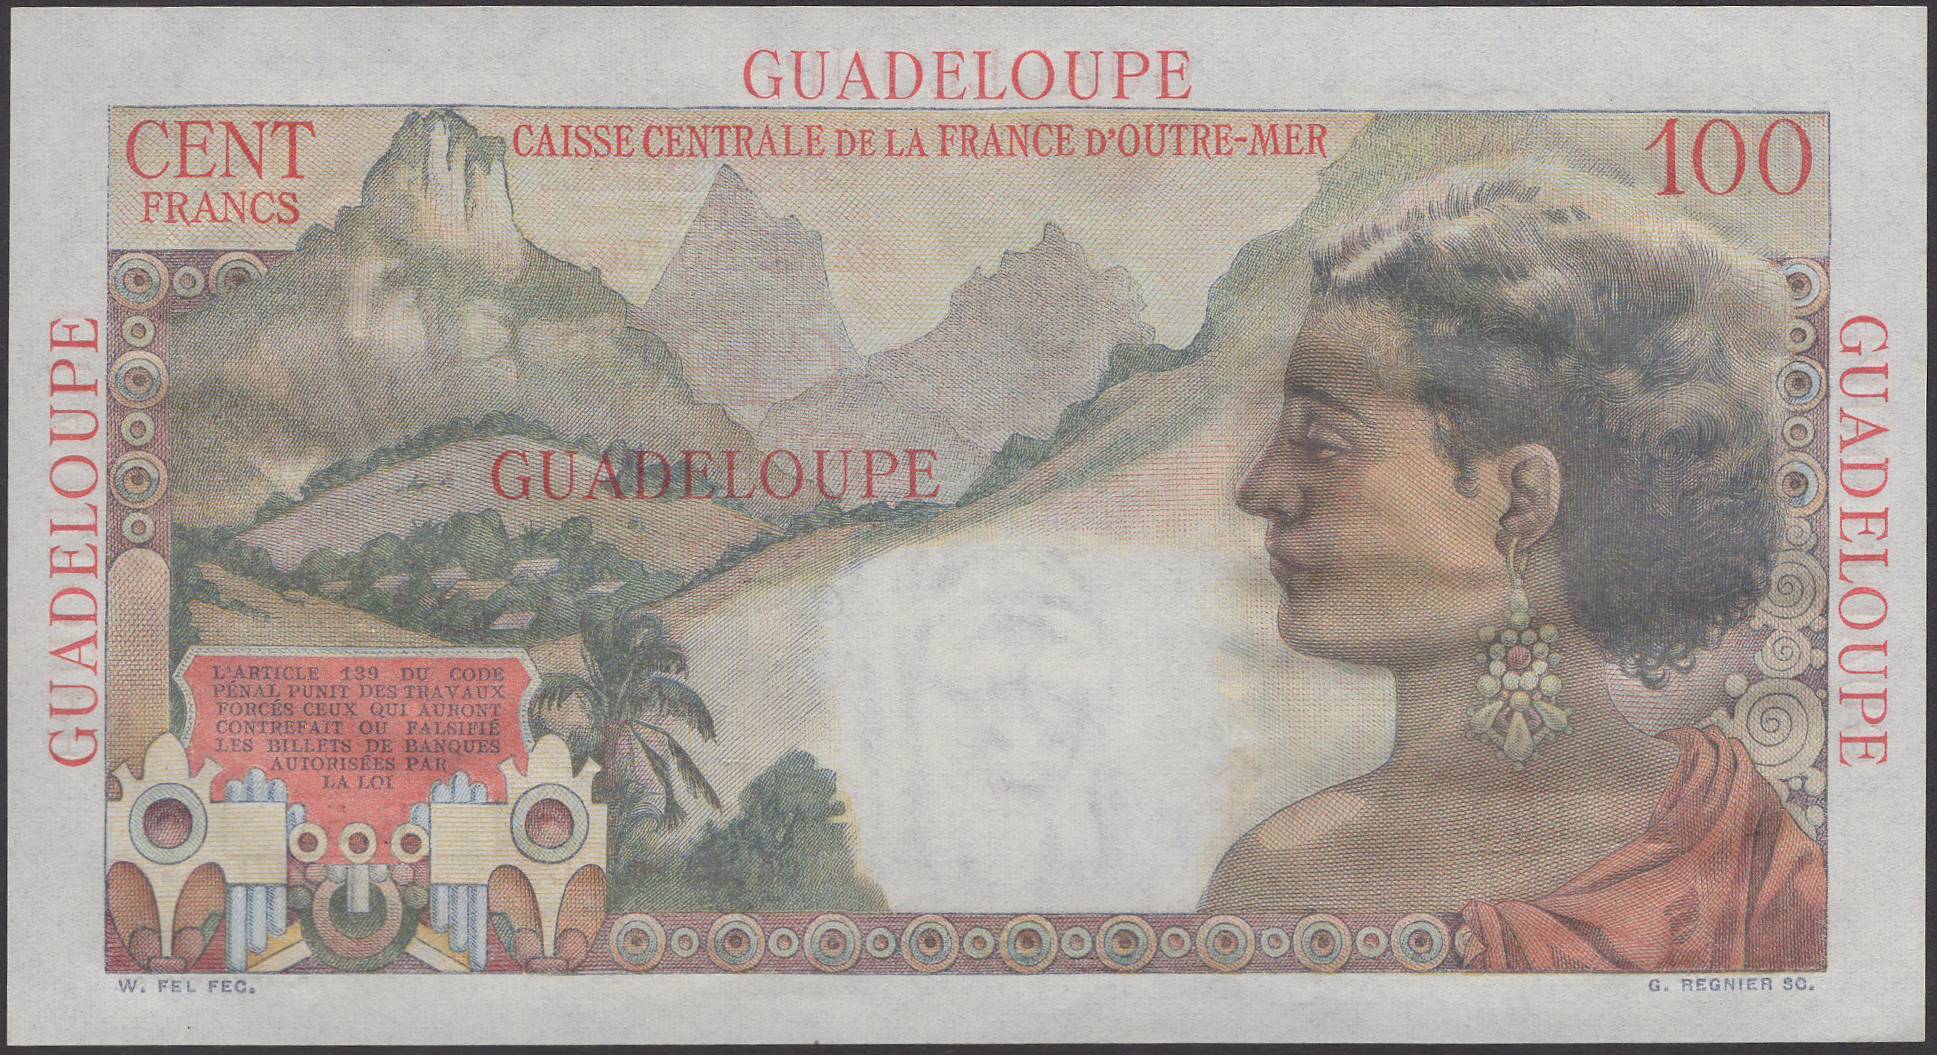 Caisse Centrale de la France d'Outre Mer, Guadeloupe, 100 Francs, ND (1947-49), serial... - Image 2 of 2